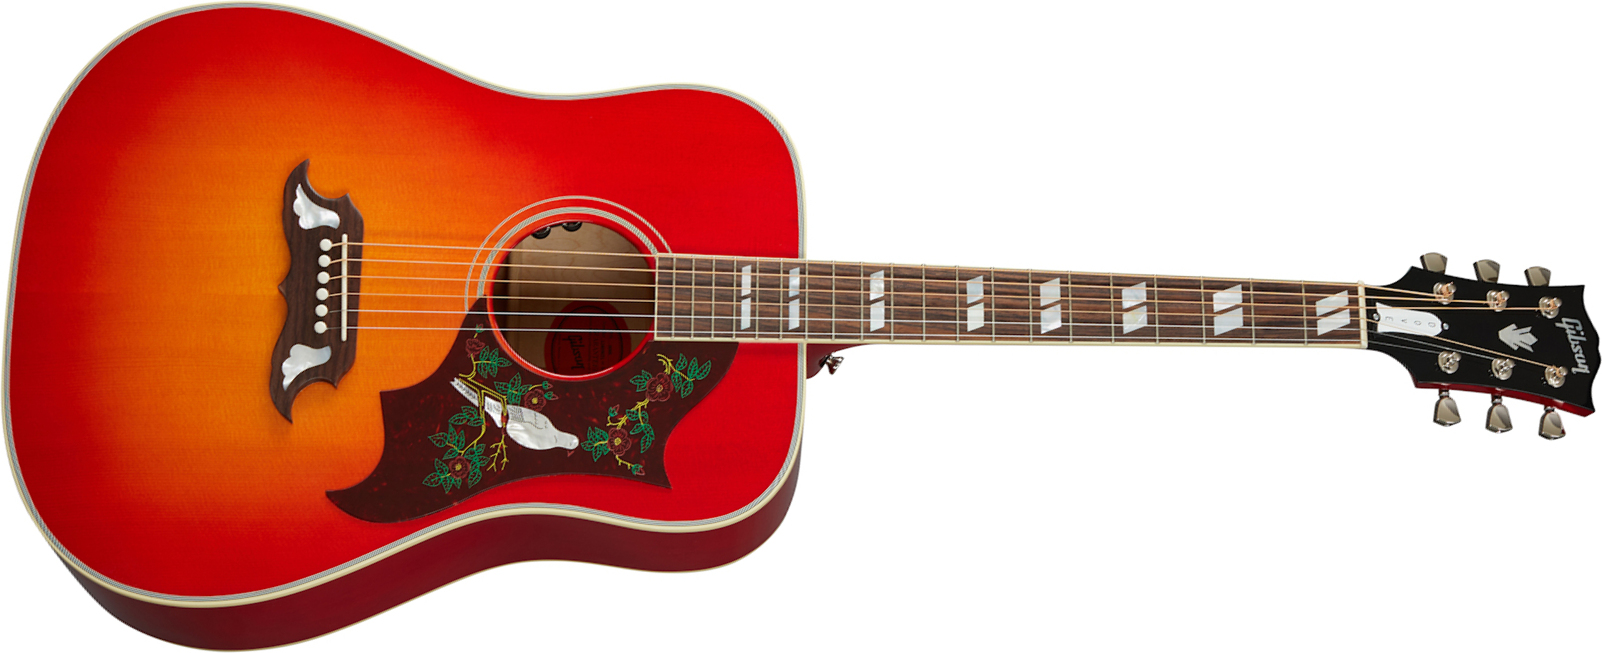 Gibson Dove Original 2020 Dreadnought Epicea Erable Rw - Vintage Cherry Sunburst - Electro acoustic guitar - Main picture